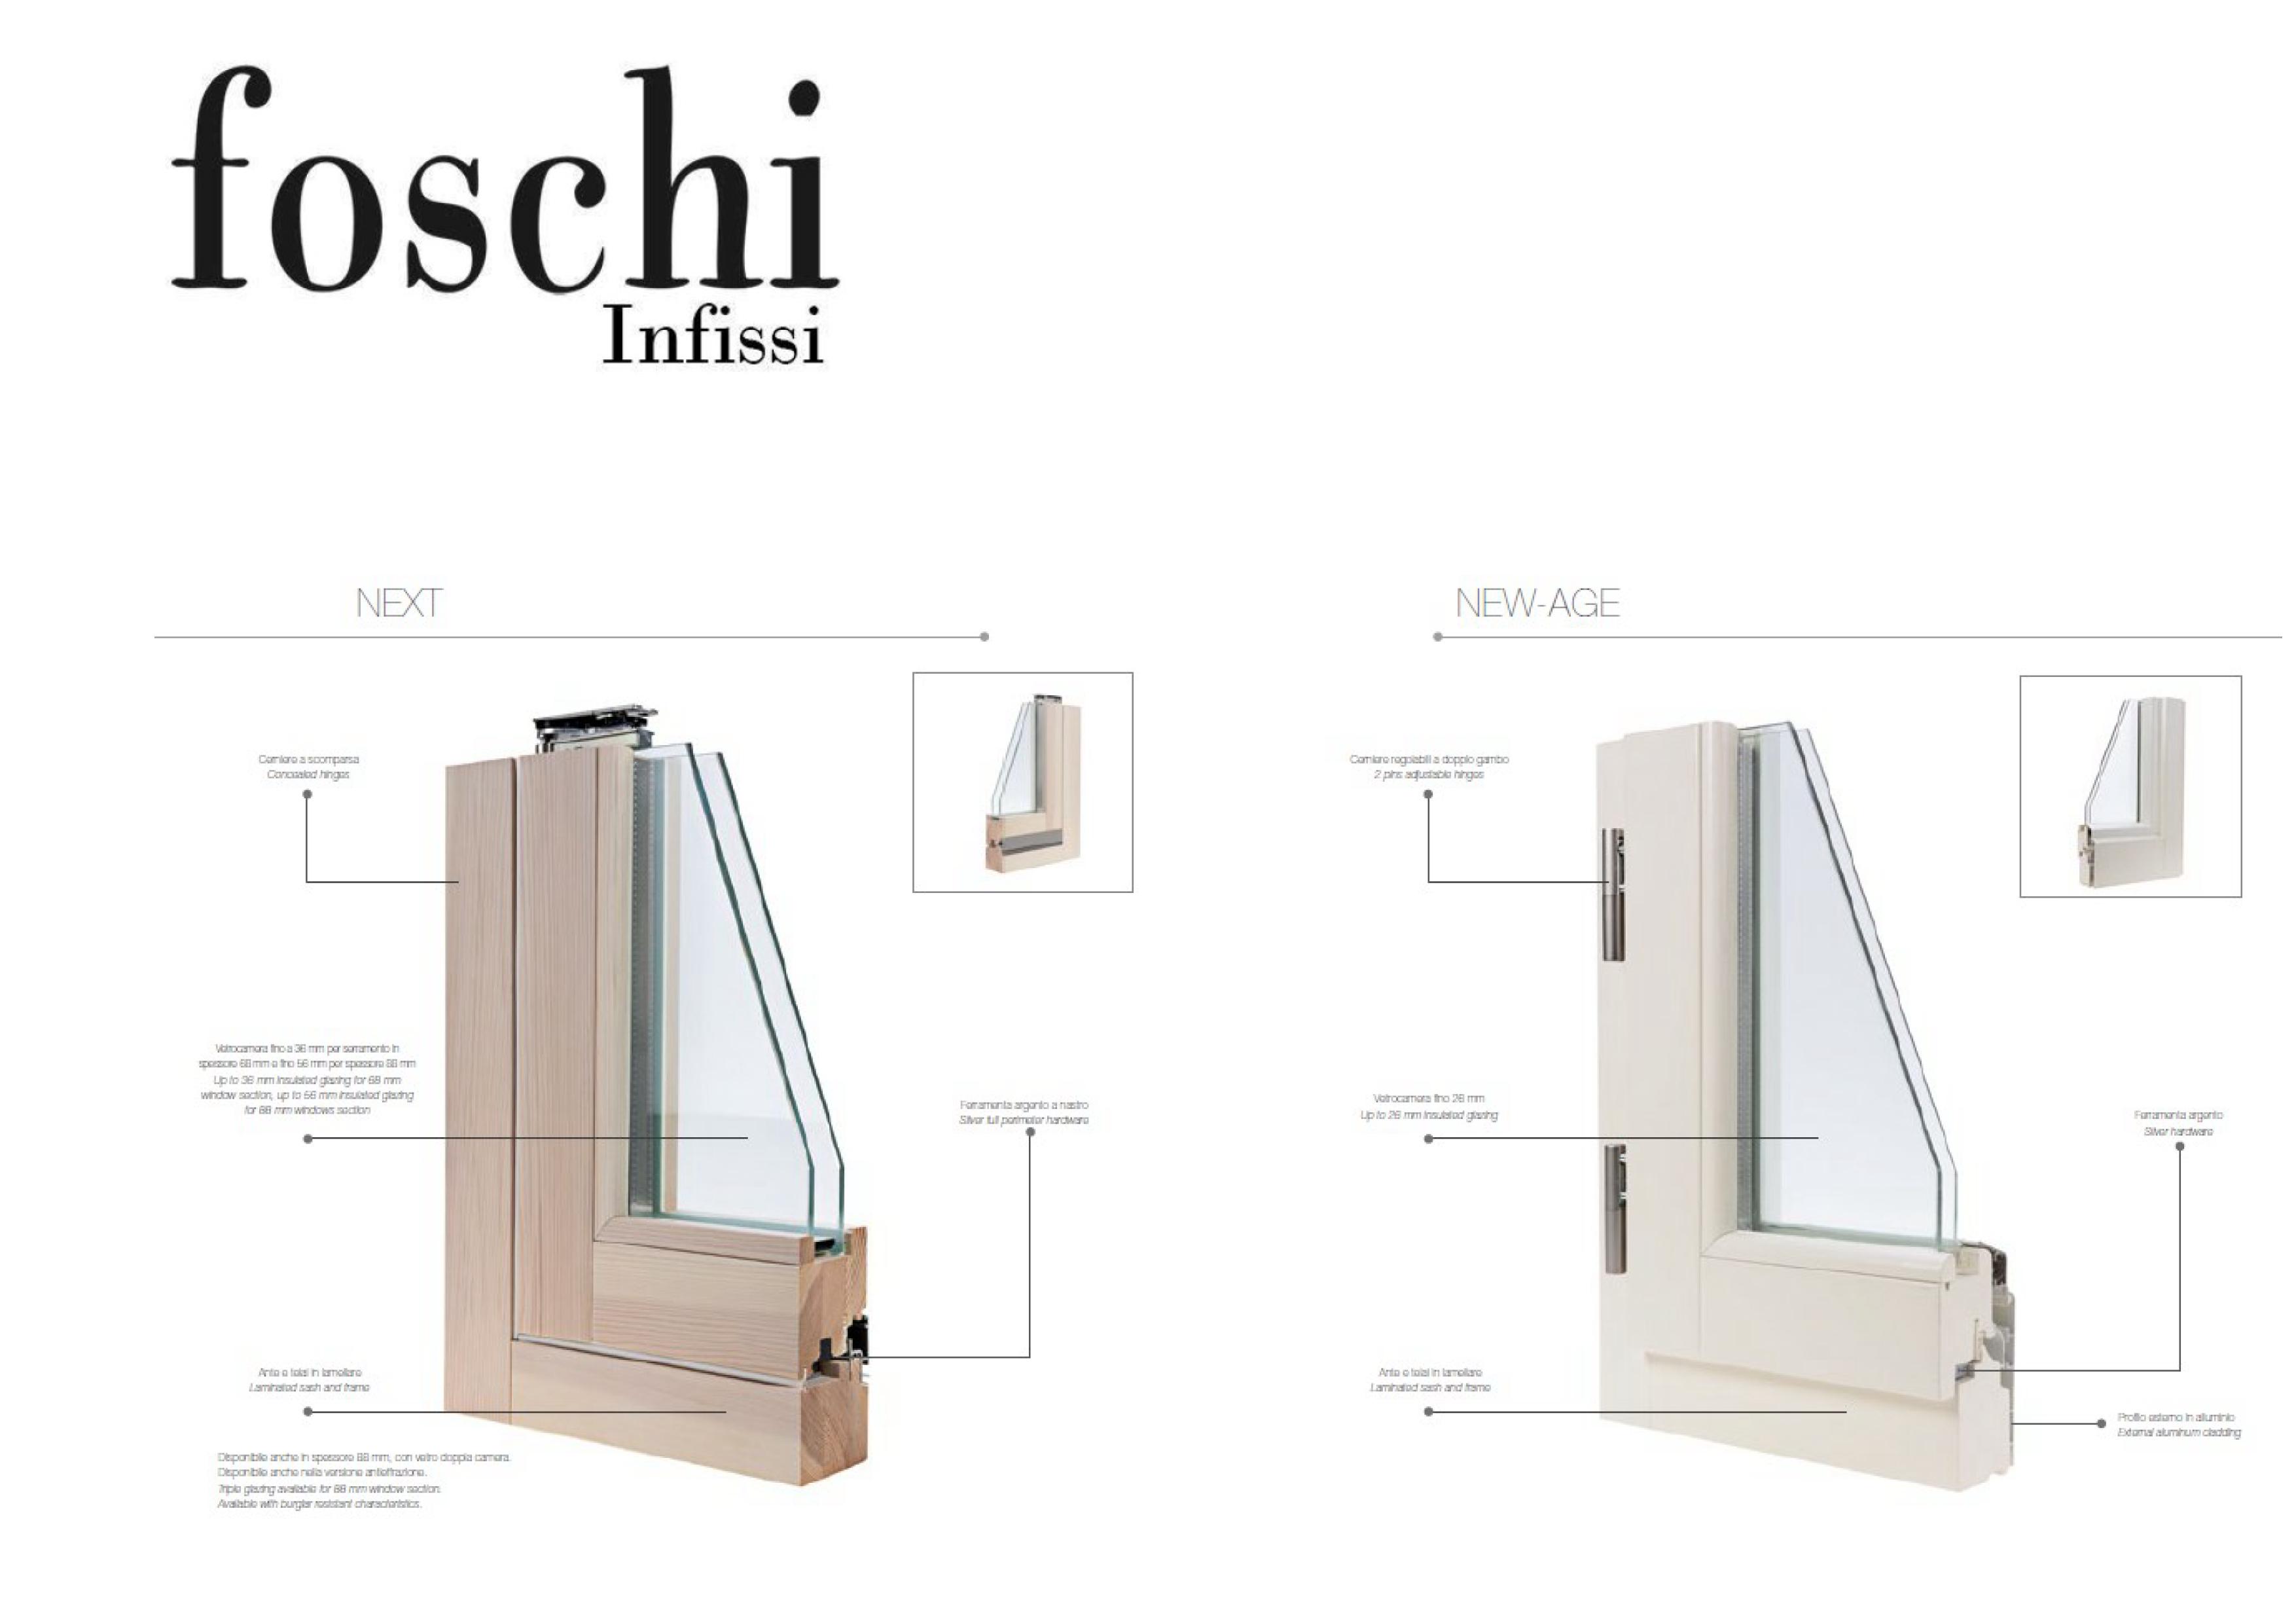 Foschi Infissi - Infissi -> Legno - Legno Alluminio -> Next - New-Age